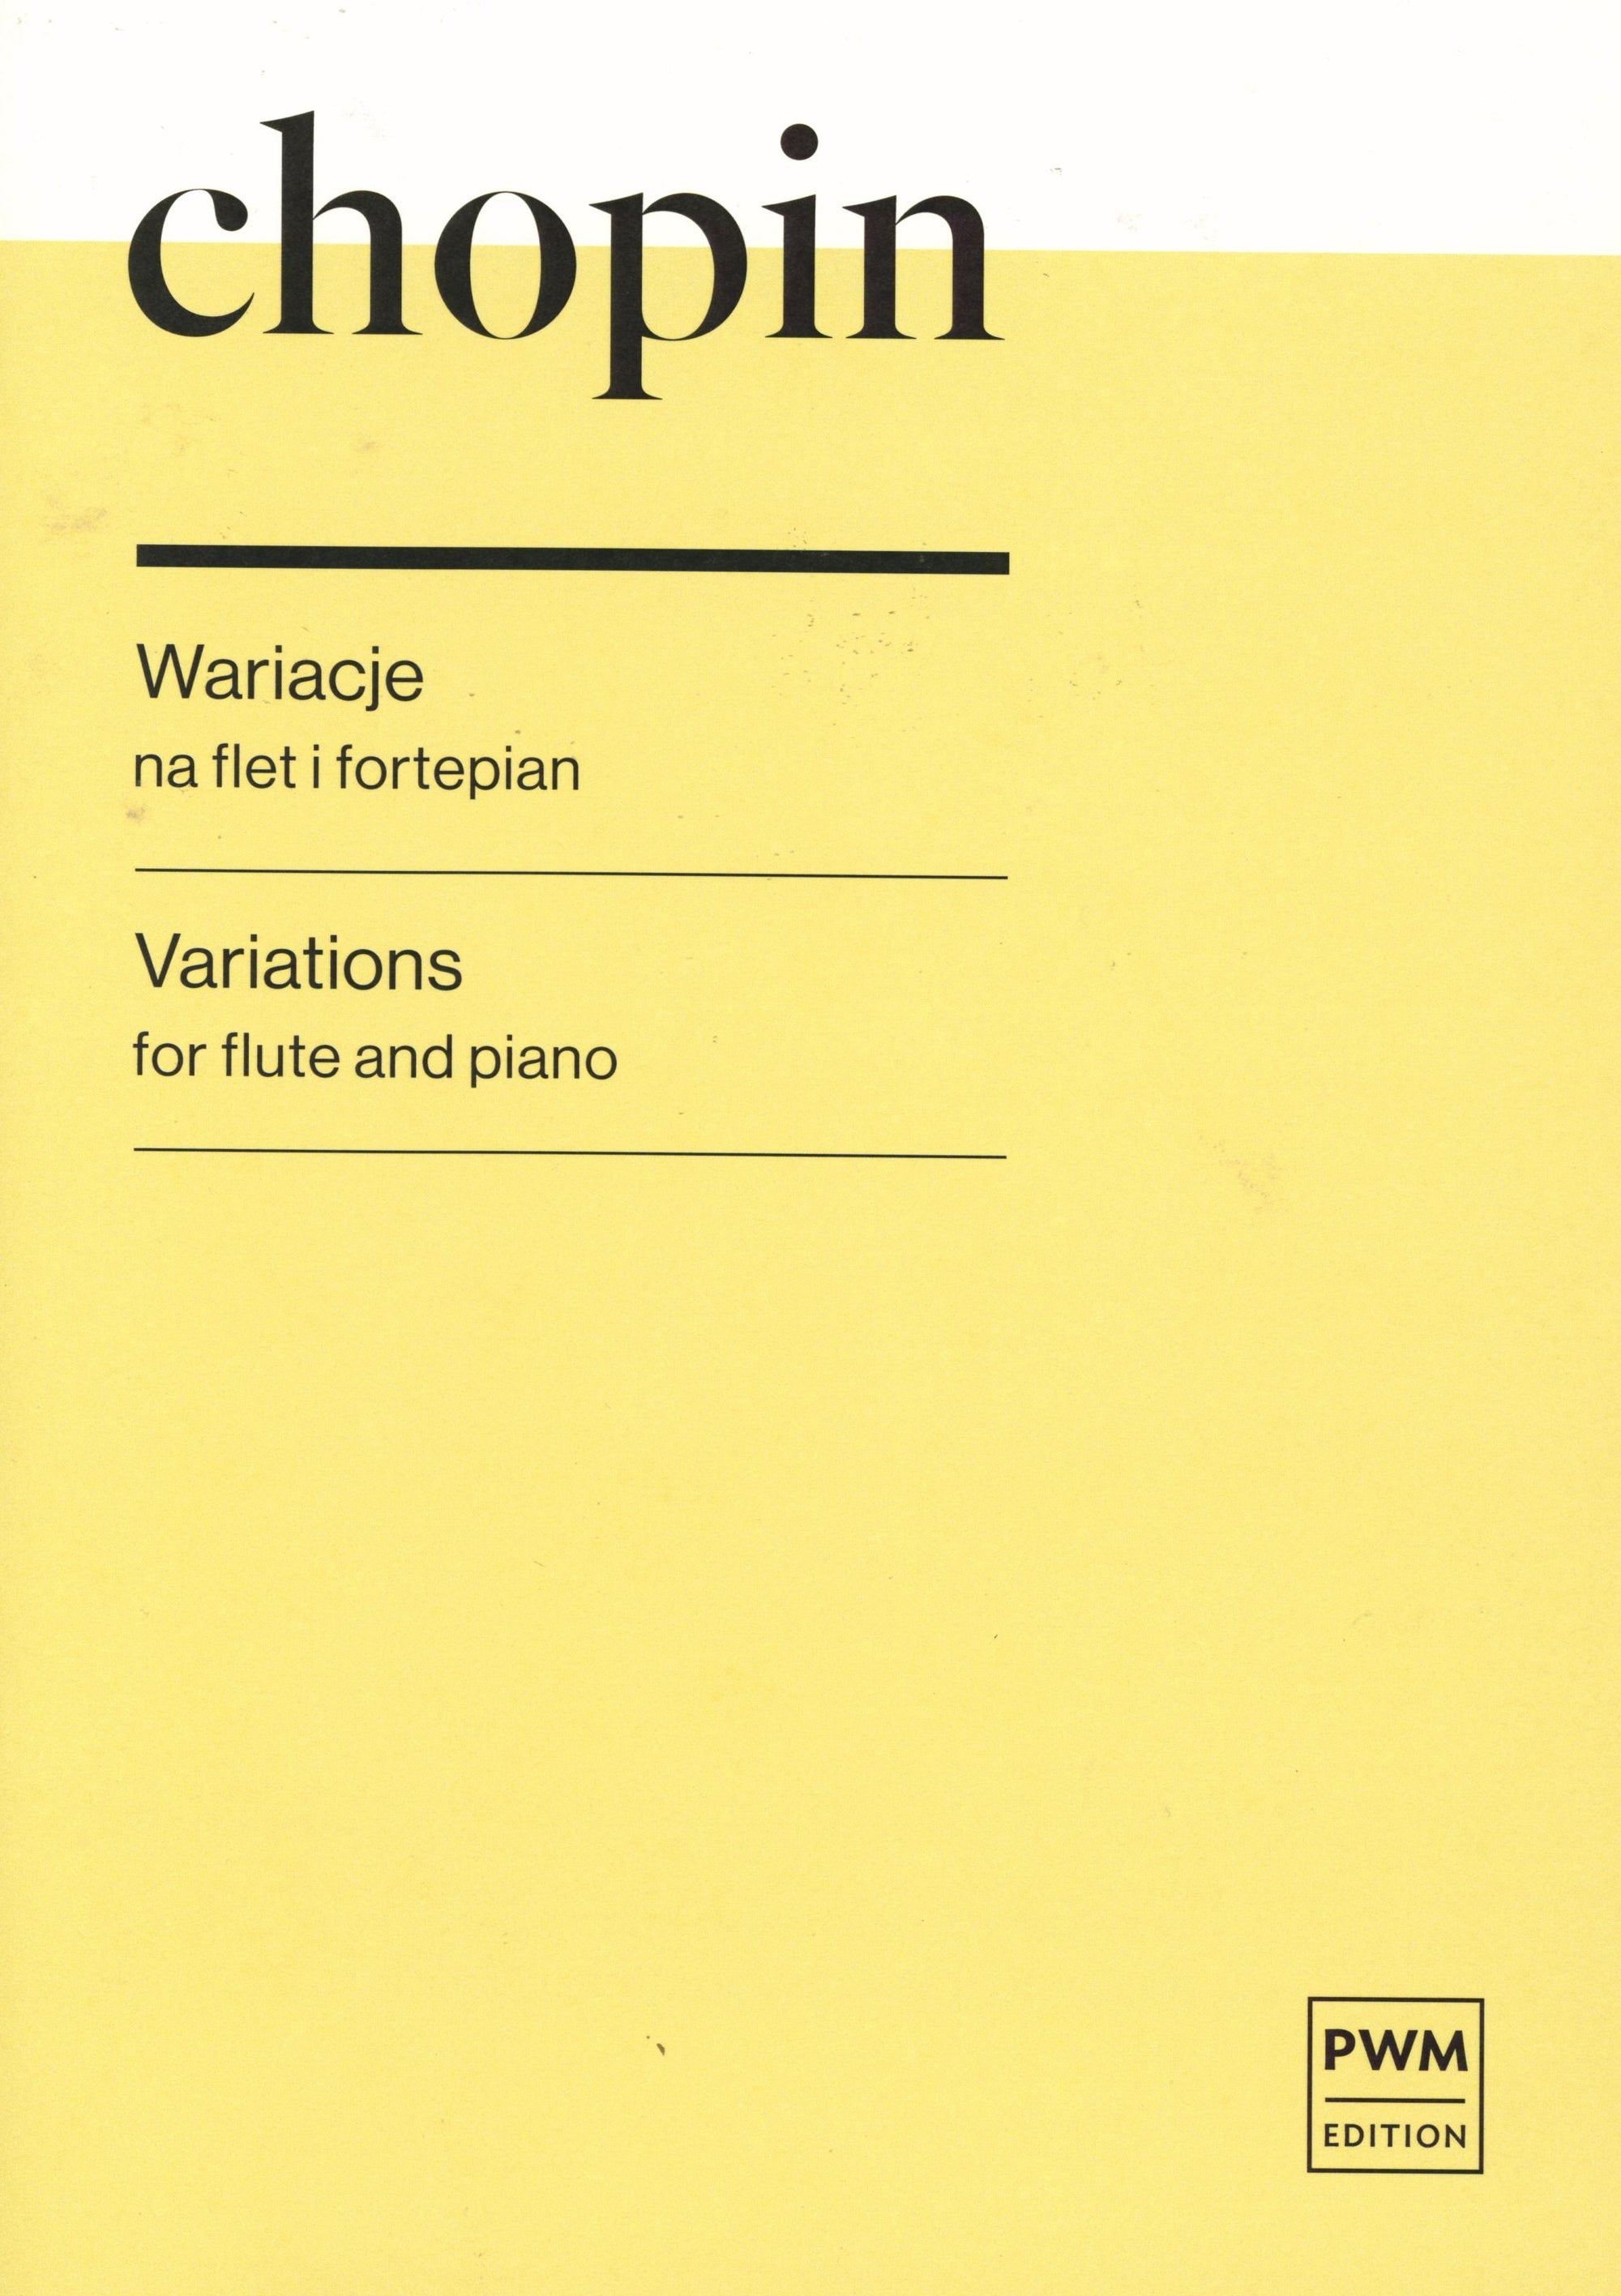 Chopin: Variations in E Major on "Non più mesta" from Rossini's La Cenerentola